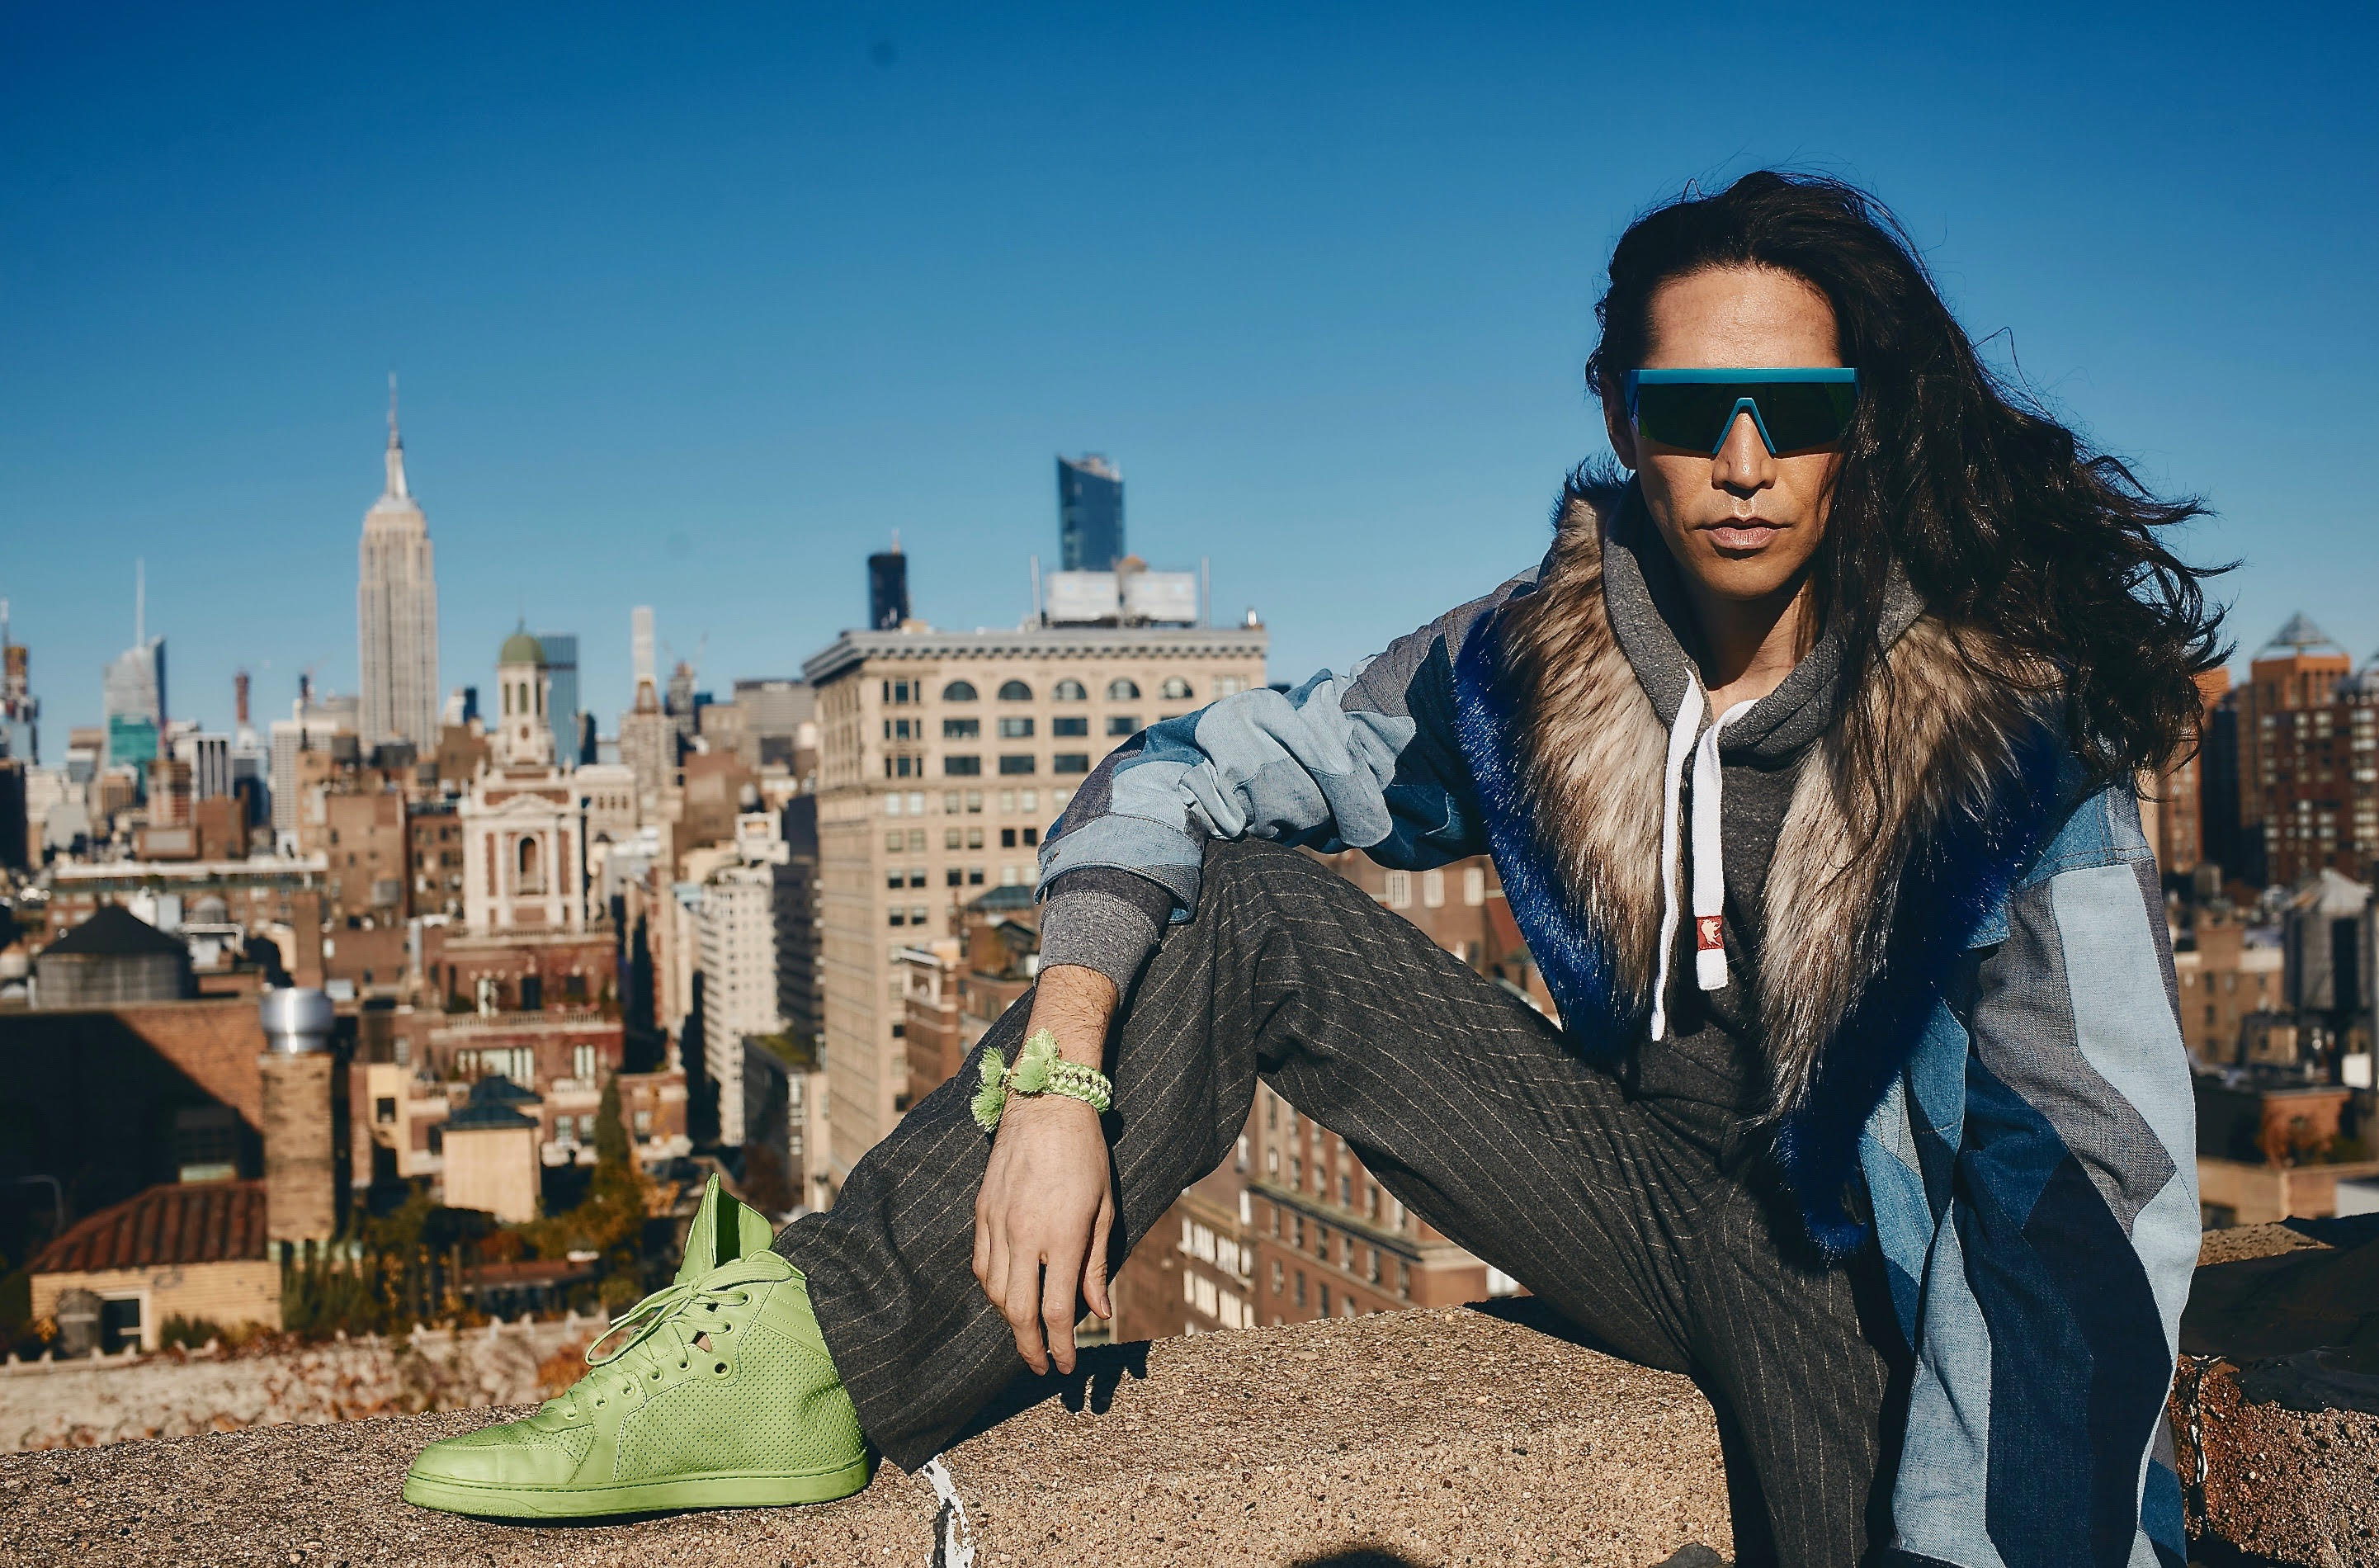  Di Mondo celebra sus 12 años en NYC con el lanzamiento de un video fashion